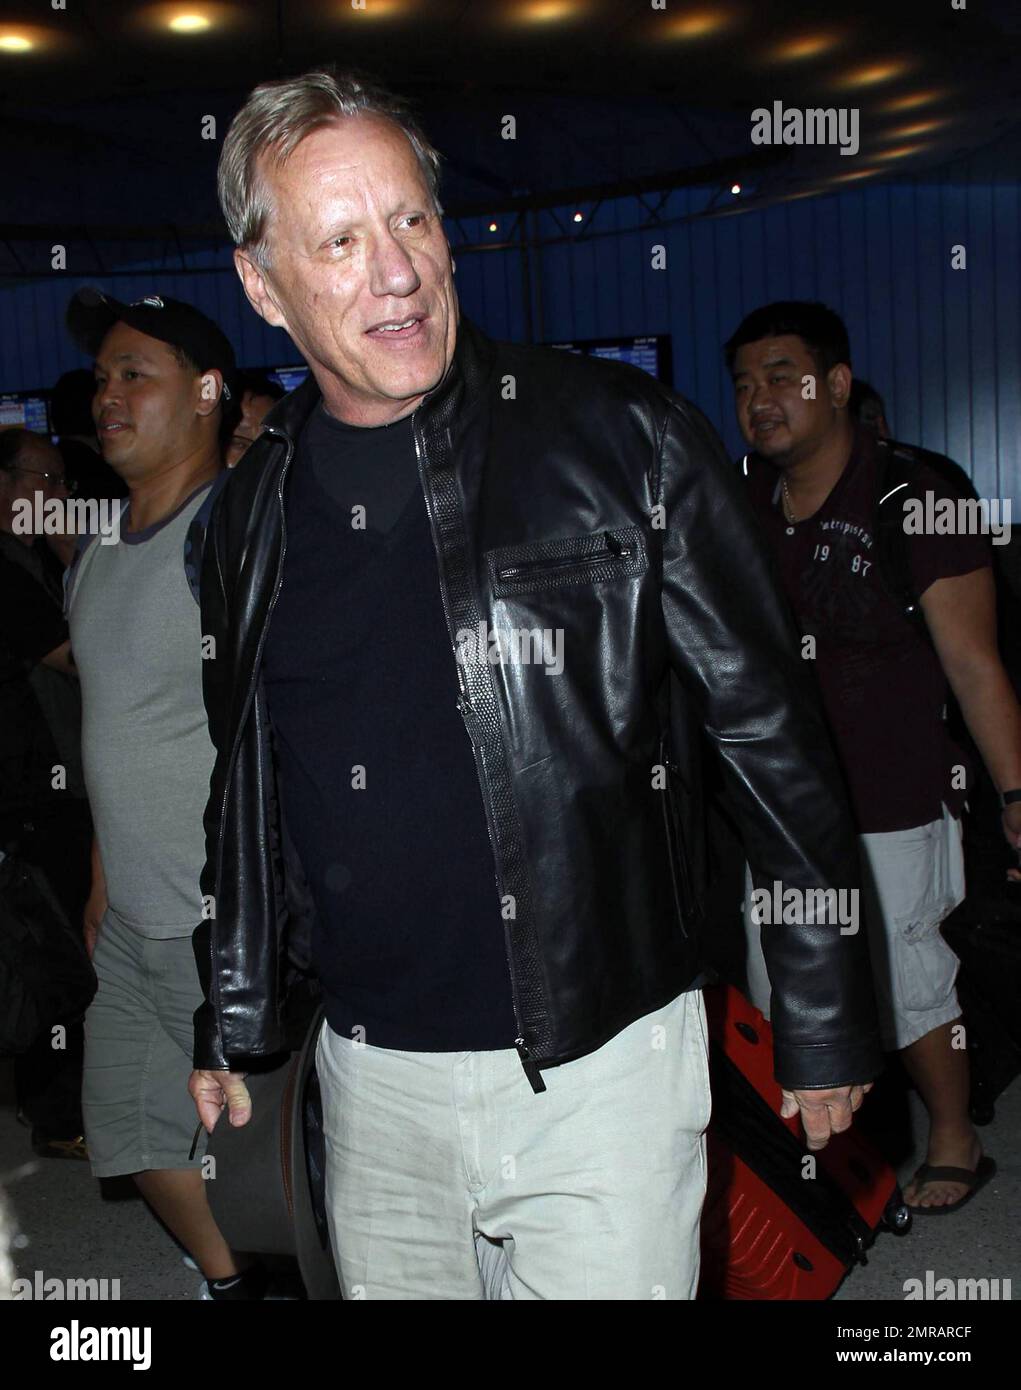 Der Schauspieler James Woods sieht lässig aus in einer schwarzen Lederjacke und einem schwarzen Hemd kombiniert mit einem Fedora, wenn er nach einem Flug am LAX ankommt. Woods wird in den kommenden Filmen „Officer Down“, die 2012 erscheinen sollen, und „Jamesey Boy“, die 2013 erscheinen sollen, die Hauptrolle spielen. Los Angeles, Kalifornien. 21. Mai 2012 Stockfoto